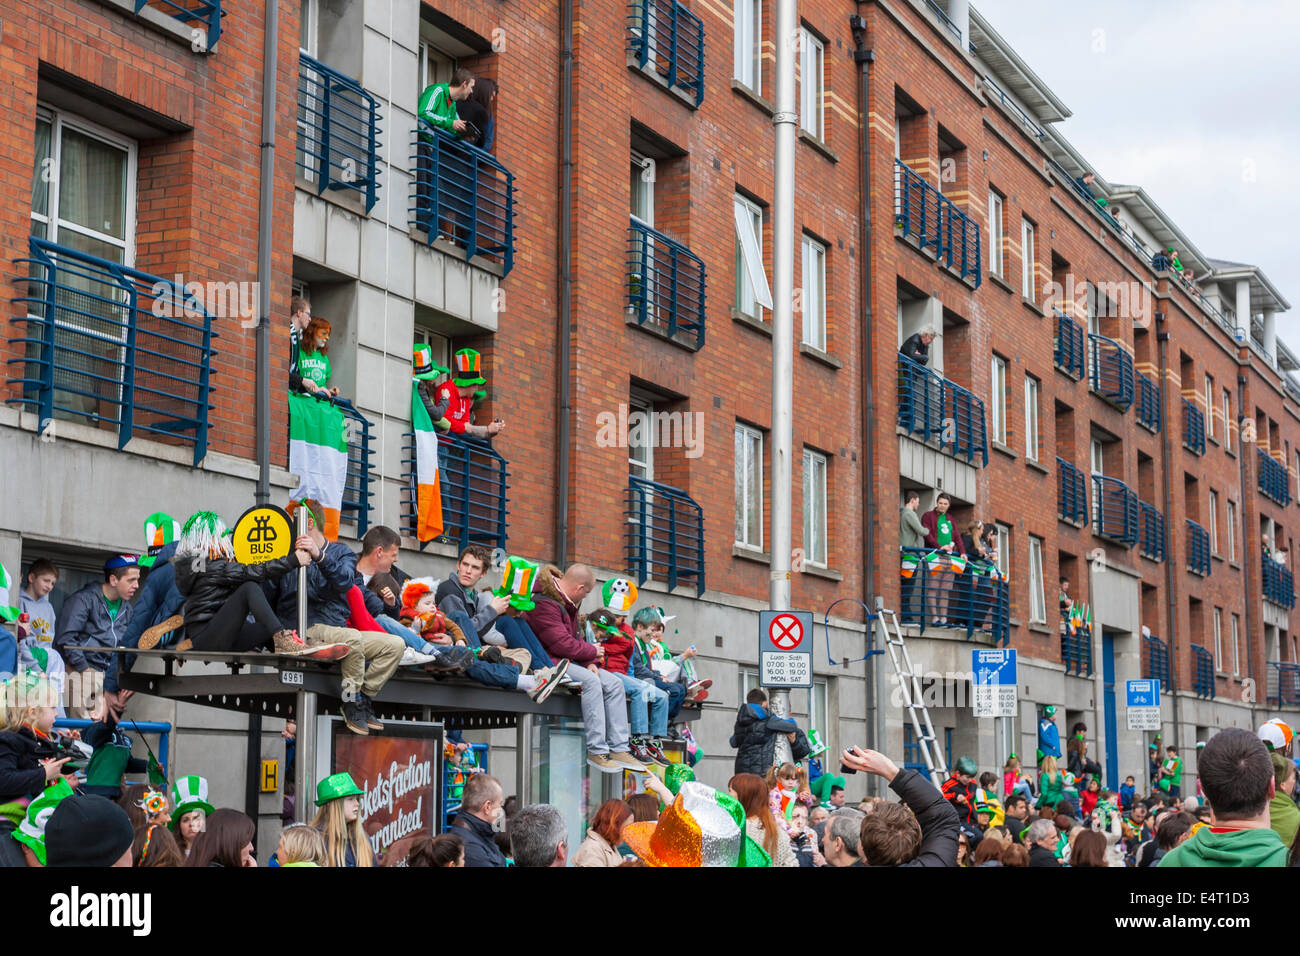 Dublin, Ireland - March 17: Saint Patrick's Day parade in Dublin, Ireland. On March 17, 2014. Stock Photo